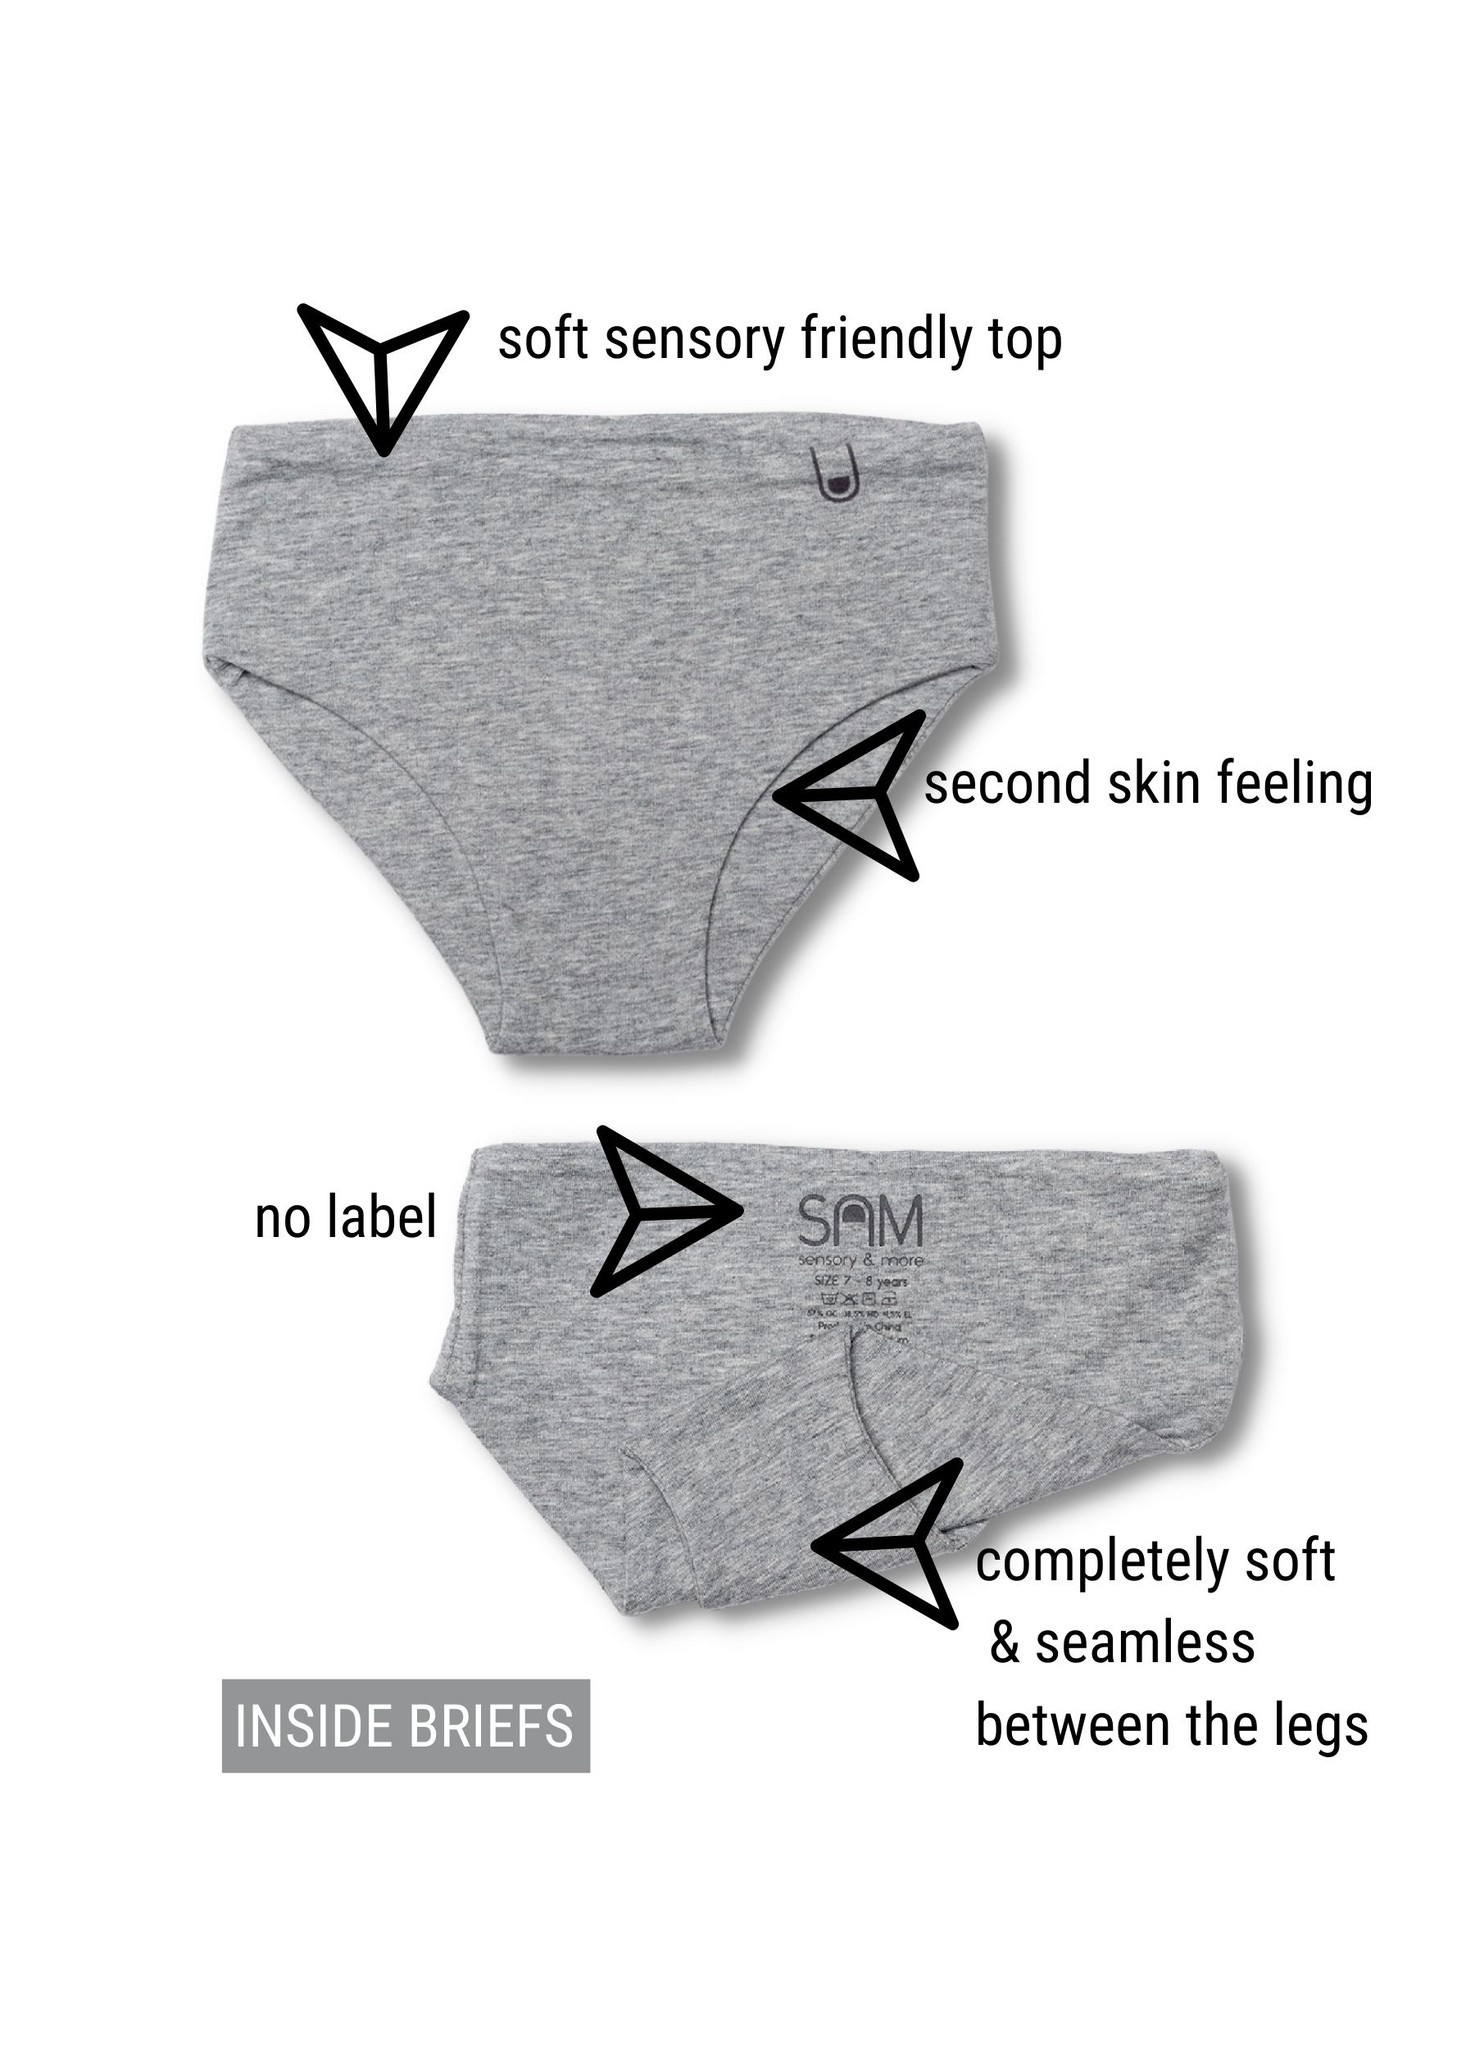 SAM Sensory™ & More SAM Sensory™ & More Seamless Organic Cotton Briefs Gray Accent